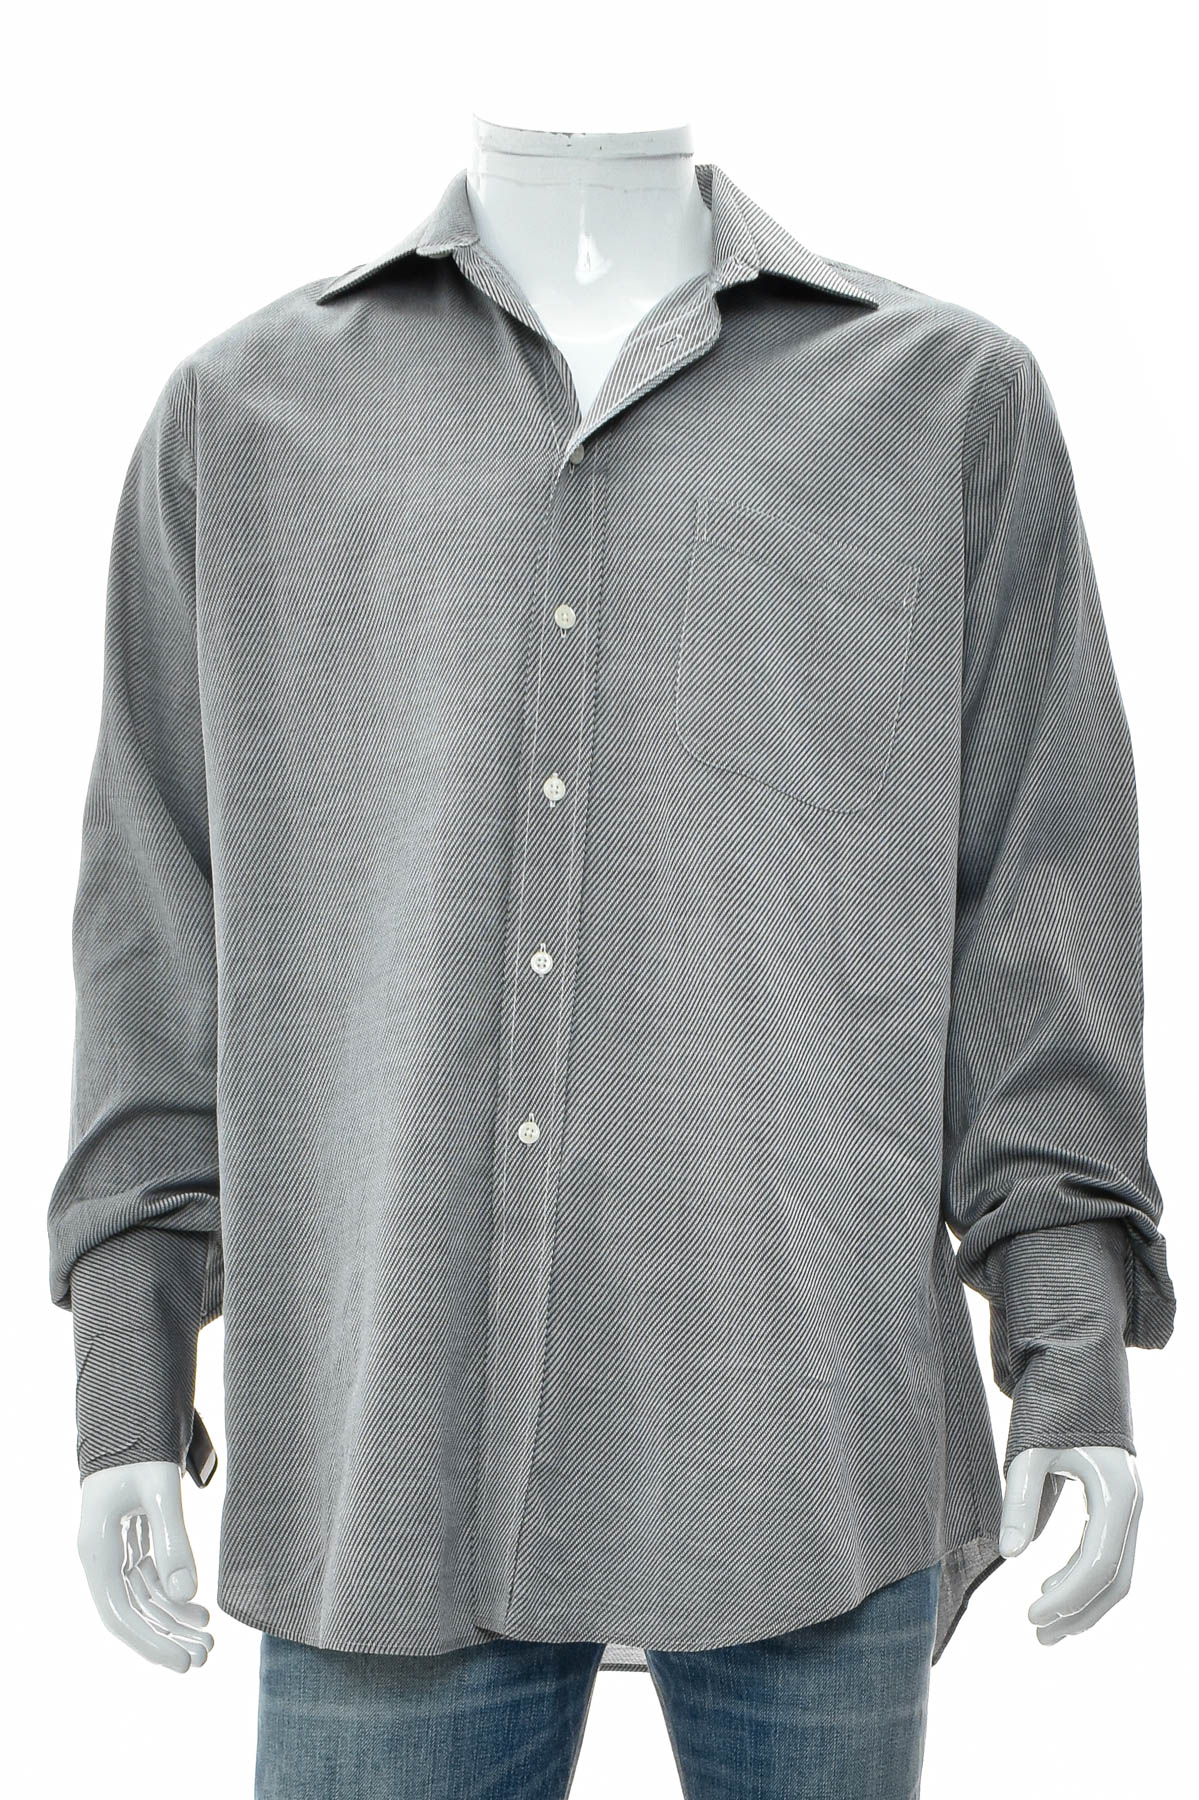 Ανδρικό πουκάμισο - Paul Fredrick - 0